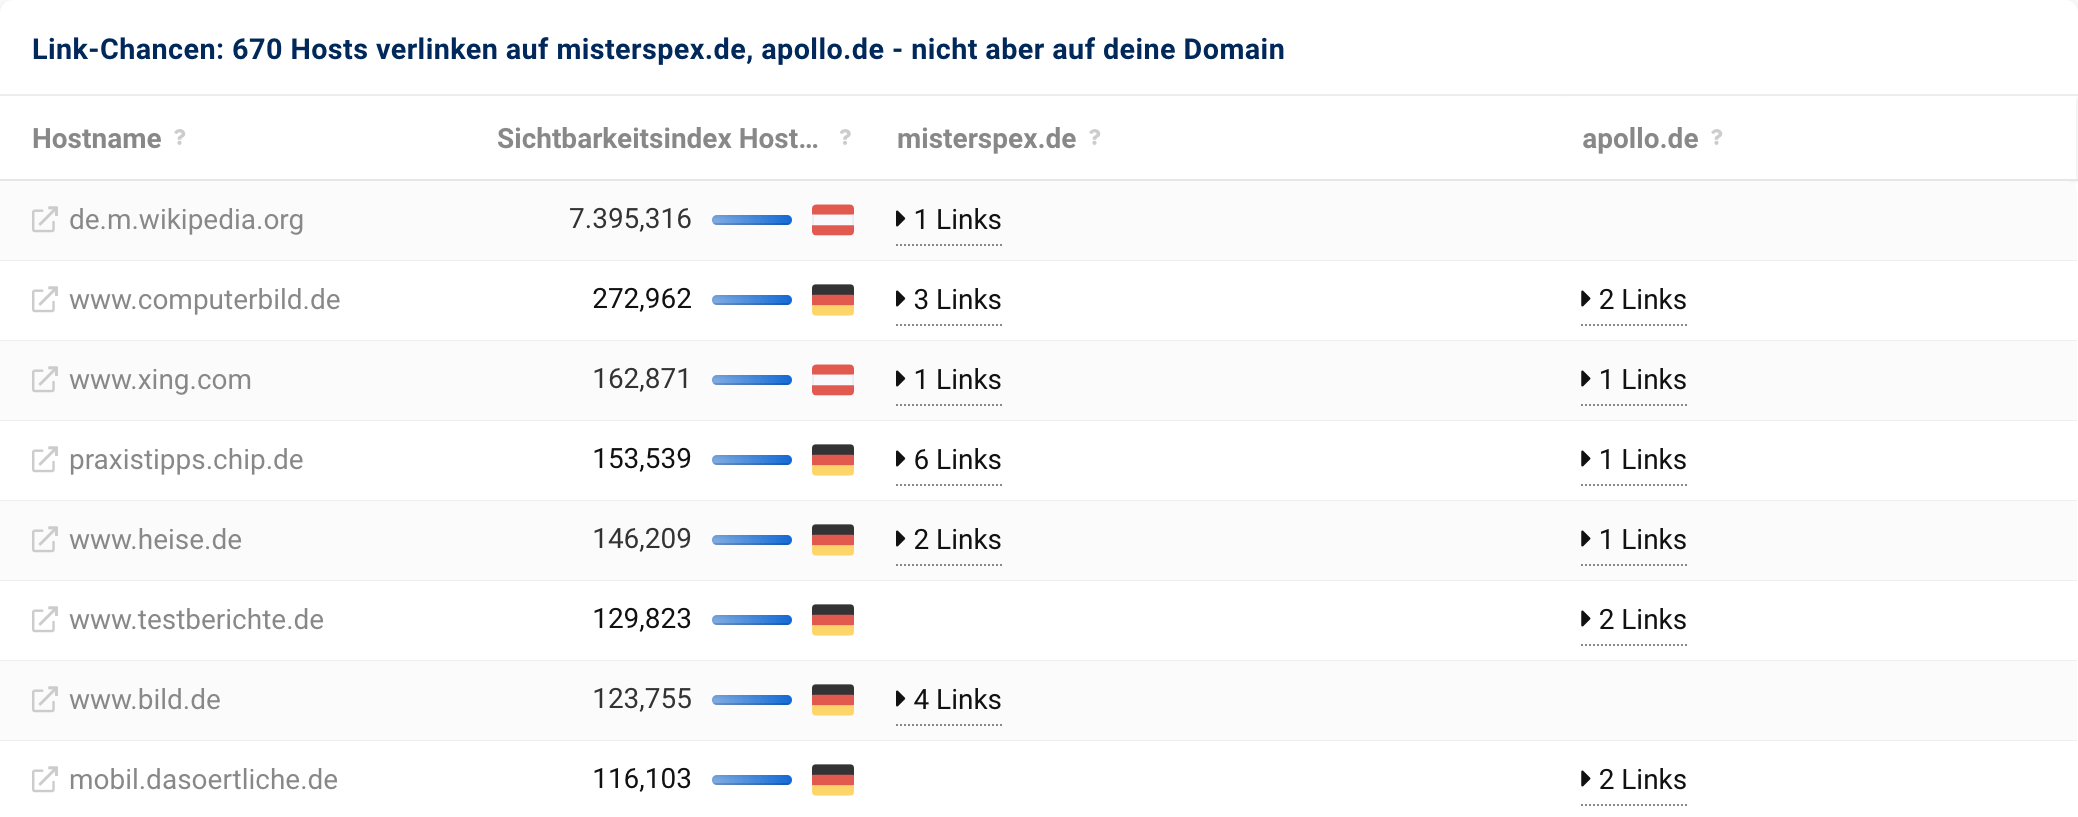 670 Hosts verlinken auf misterspex.de und apollo.de, aber nicht auf unsere Domain lensbest.de.